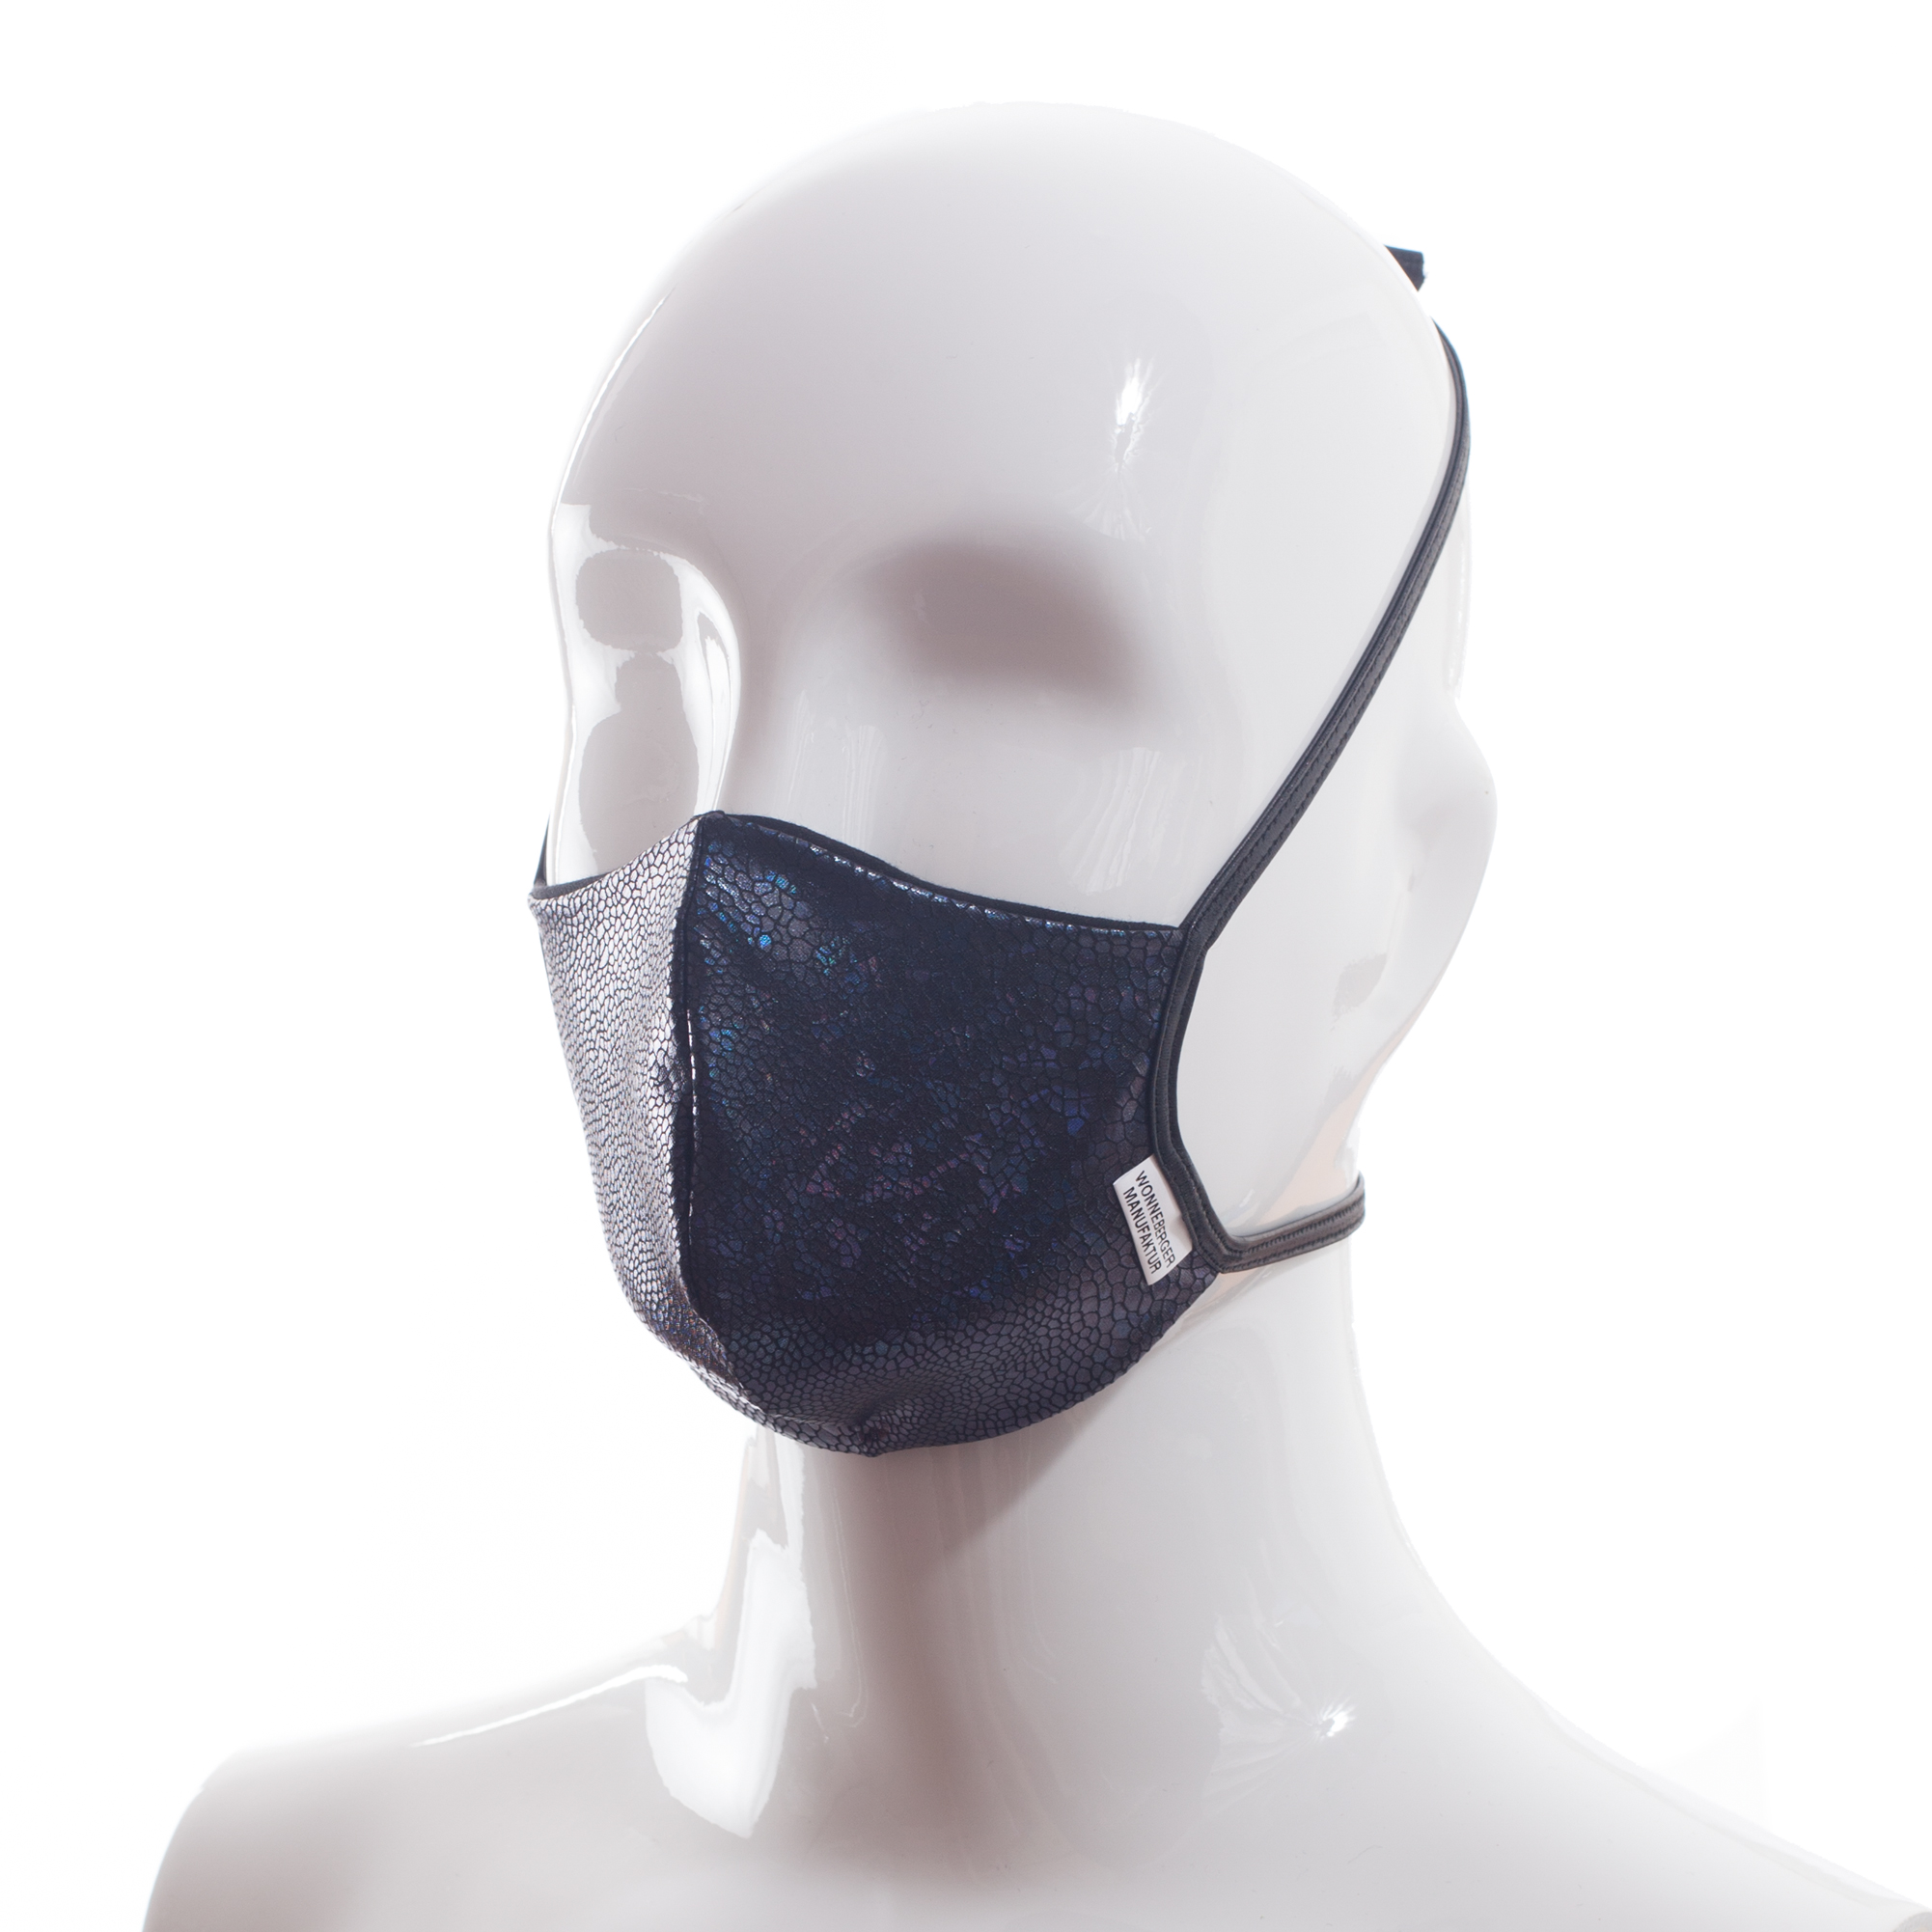 Die Baumwoll-Polyester Mund-Nasen Maske BWPM4 von der Wonneberger Manufaktur ist eine textile Behelfsmaske, kein zertifizierter Mundschutz.

Sie schützt nur bedingt vor Ansteckung. Ihr eigentlicher Zweck ist es, den Atem des Trägers zu filtern und dadurch seine Umgebung zu schützen.

Daher muss die…